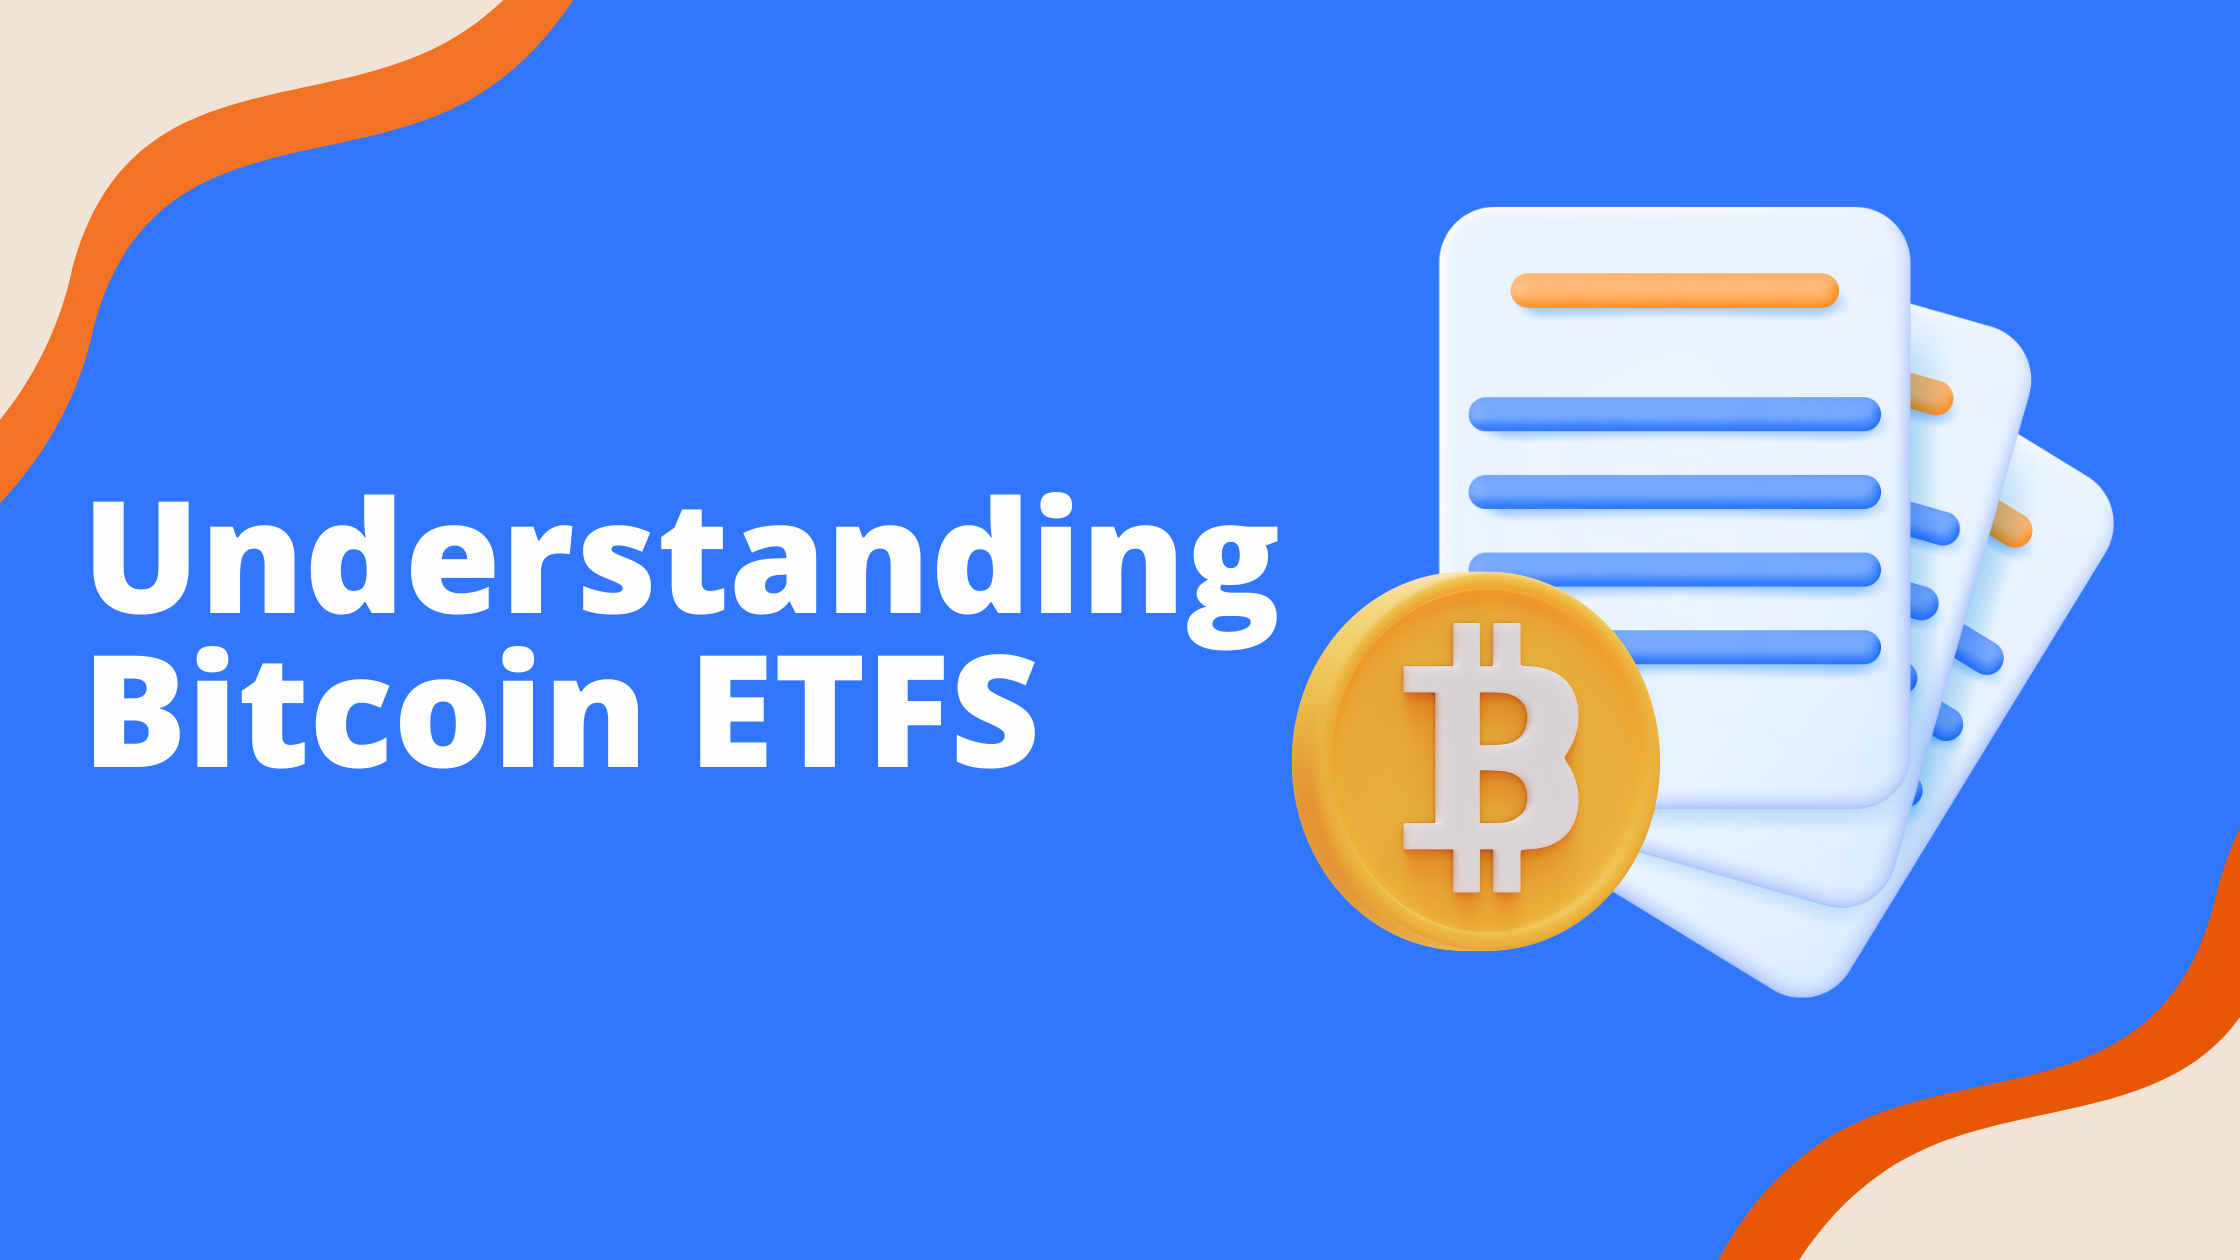 Bitcoin ETF Fees Comparison